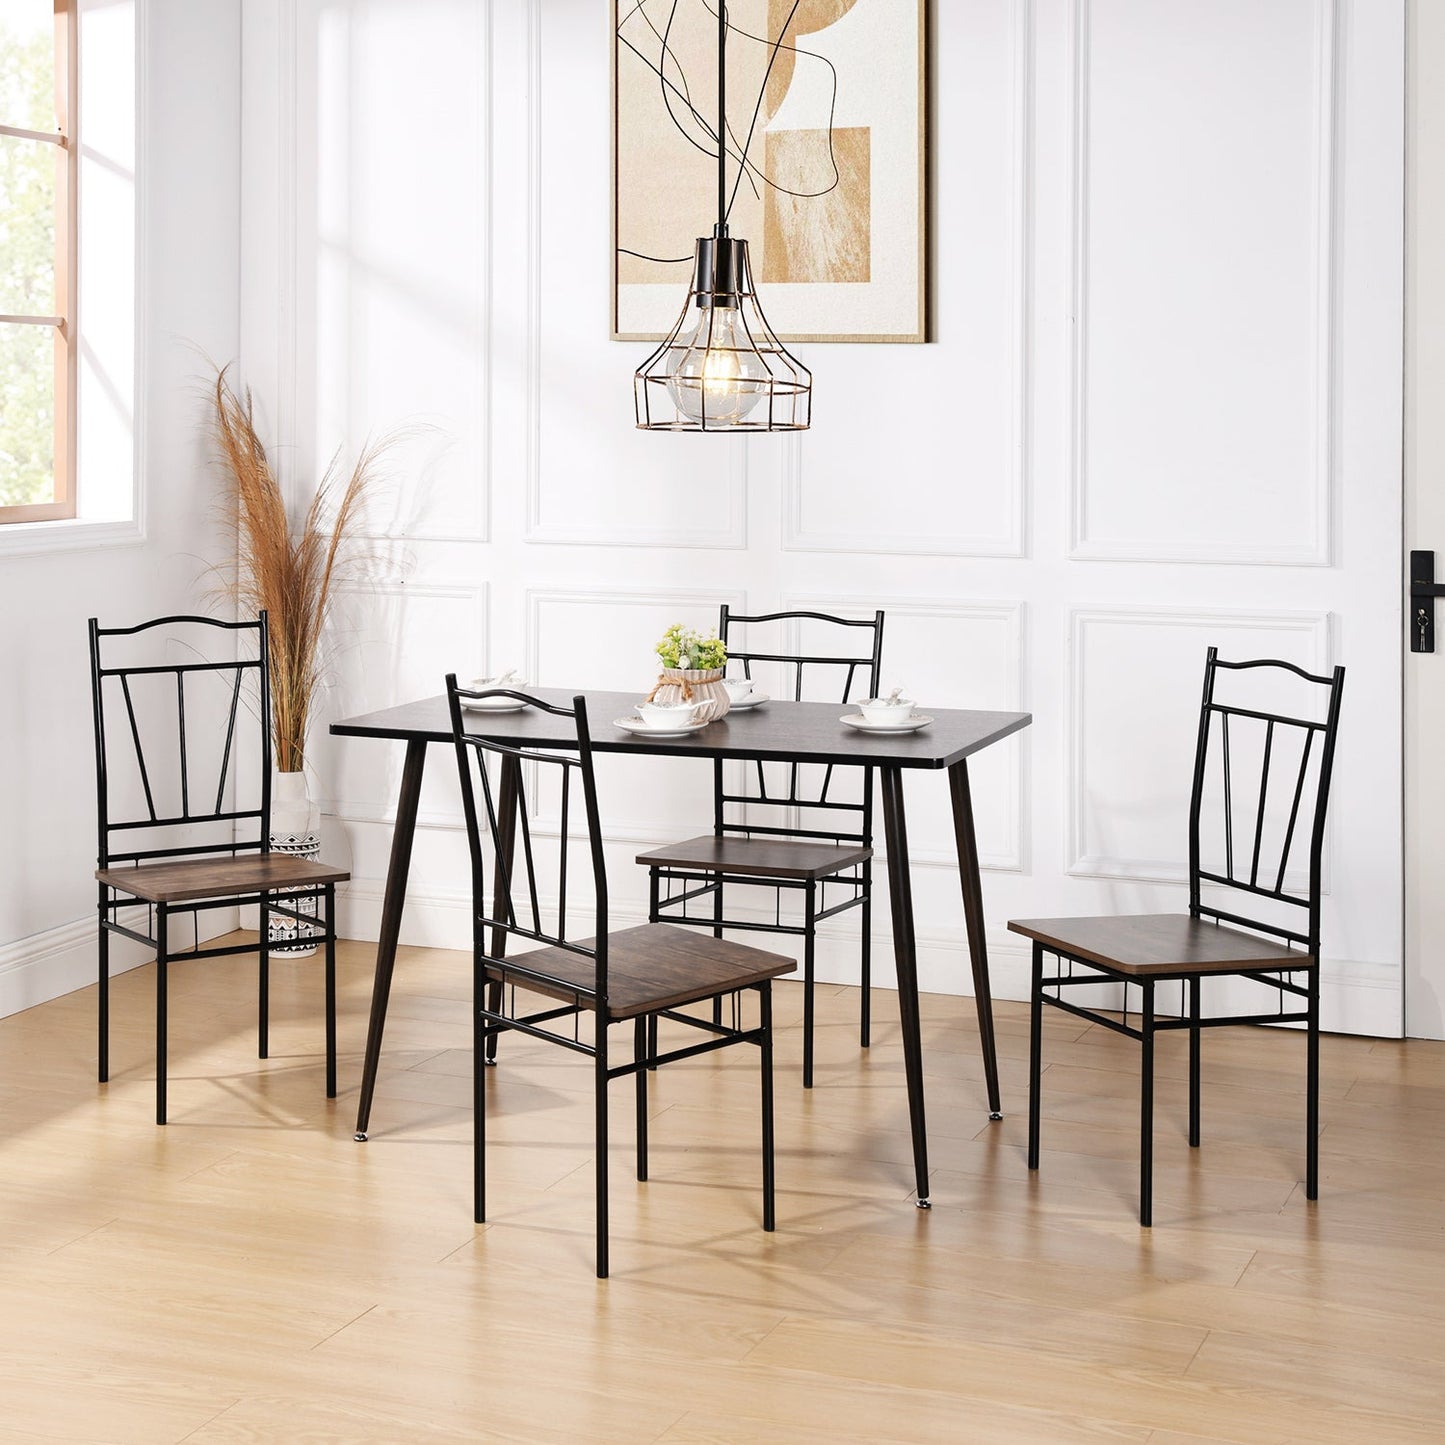 Lot de 6 chaises pieds en Métal nior de style industriel, chaises salle à manger, salon, 40x40x90 cm